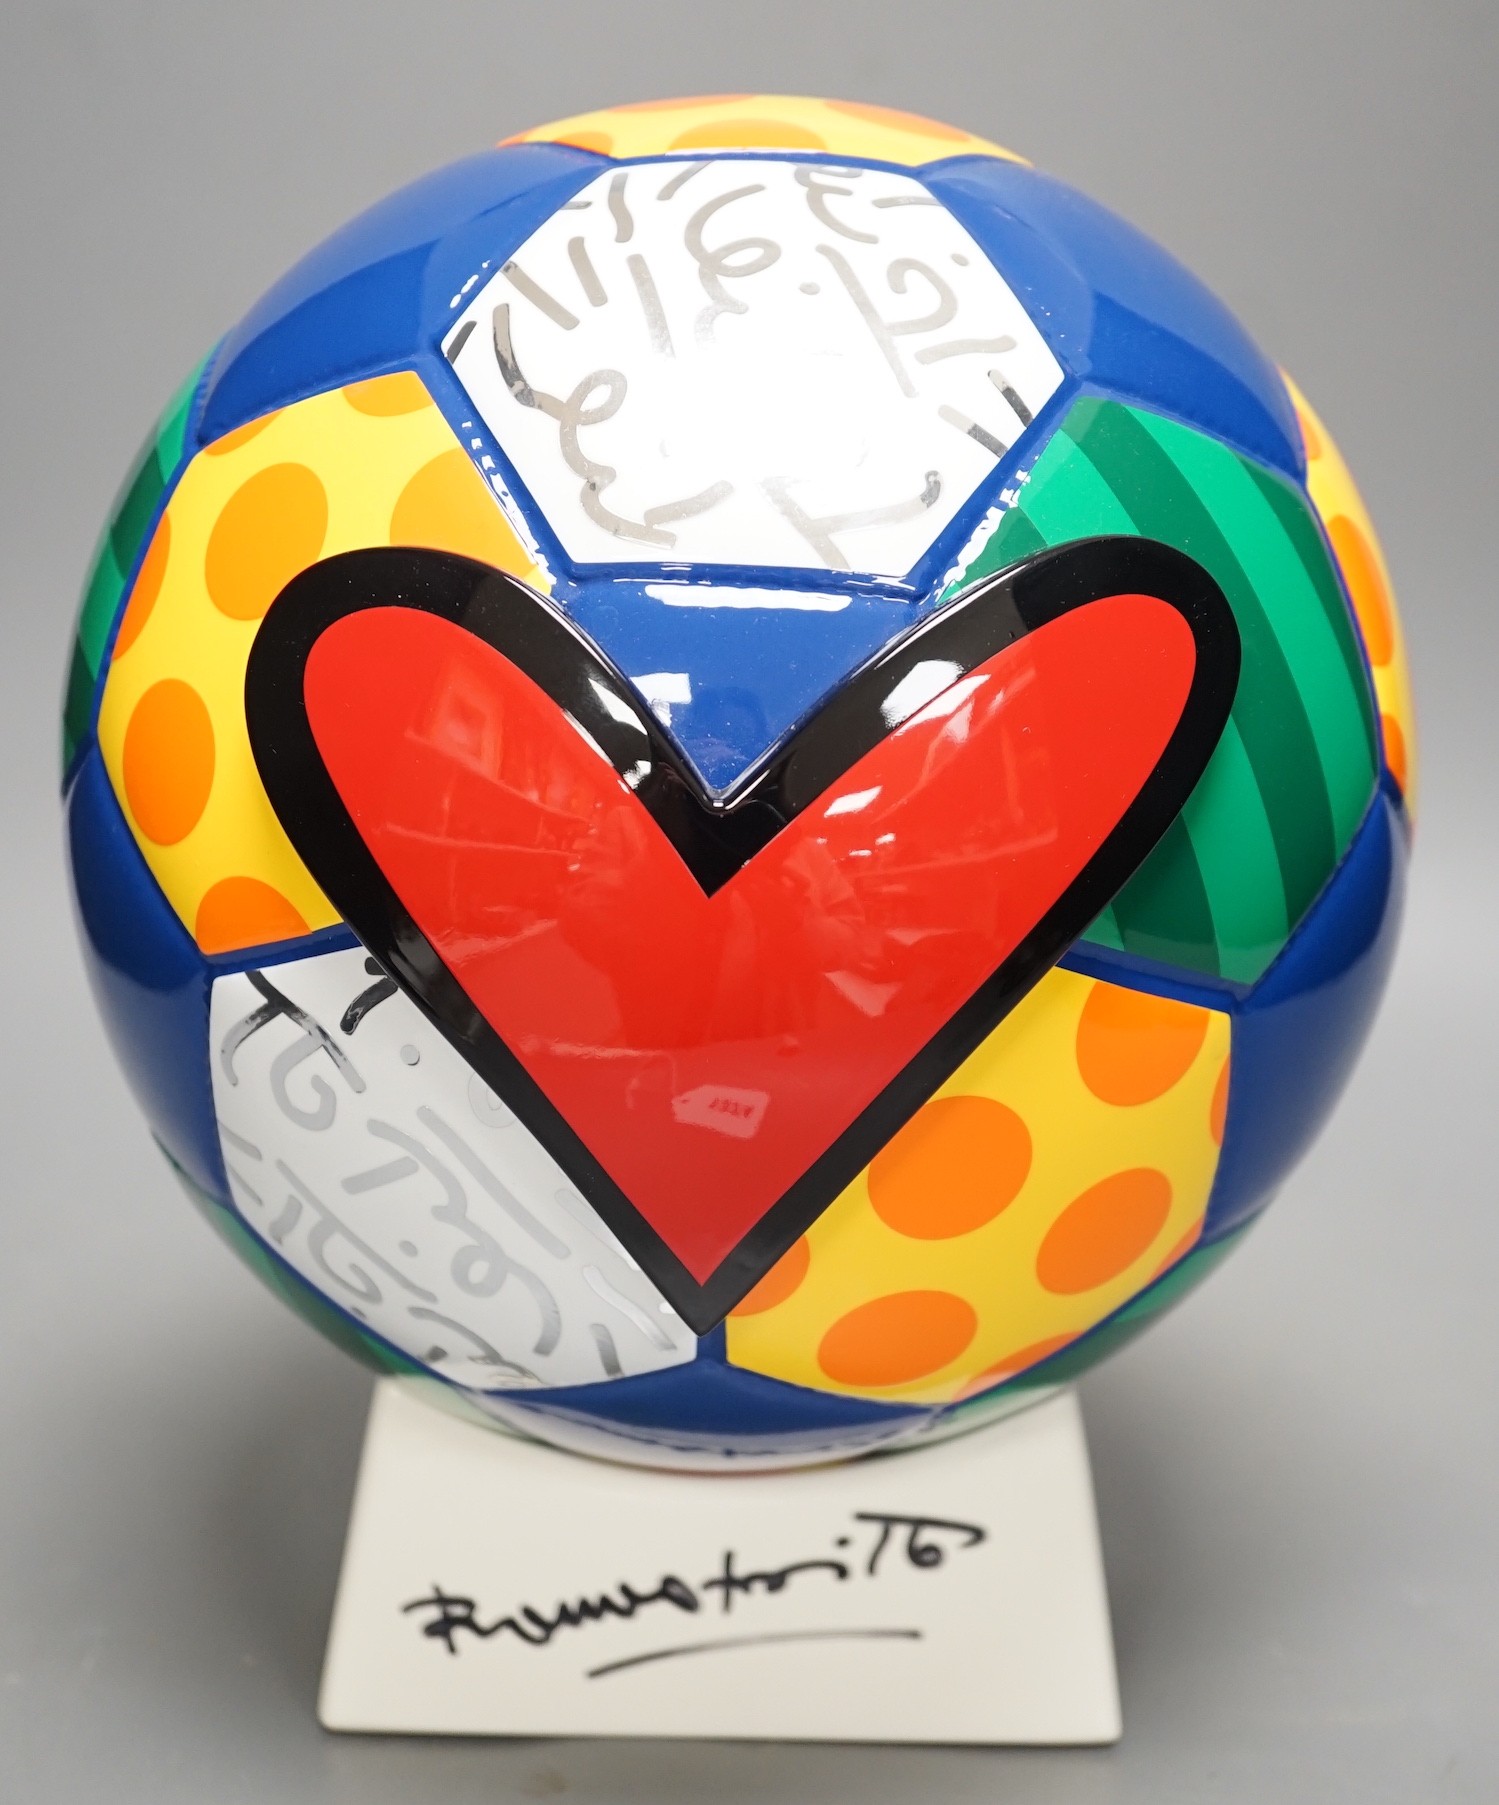 Romero Britto (Brazilian, 1963-), a ceramic football, 26cm